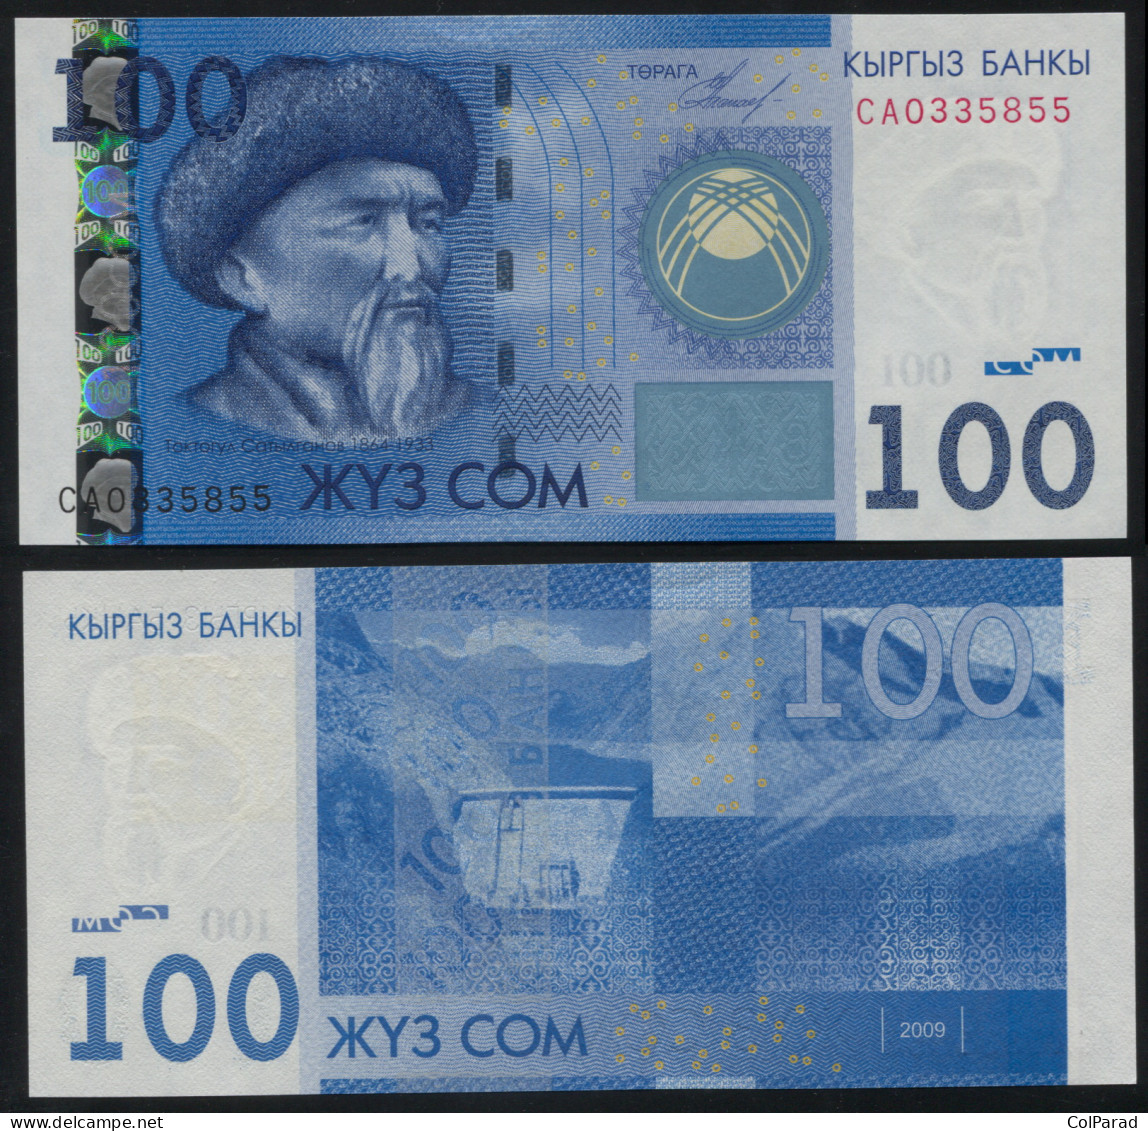 KYRGYZSTAN 100 SOM - 2009 - Unc - P.26a Paper Banknote - Kyrgyzstan